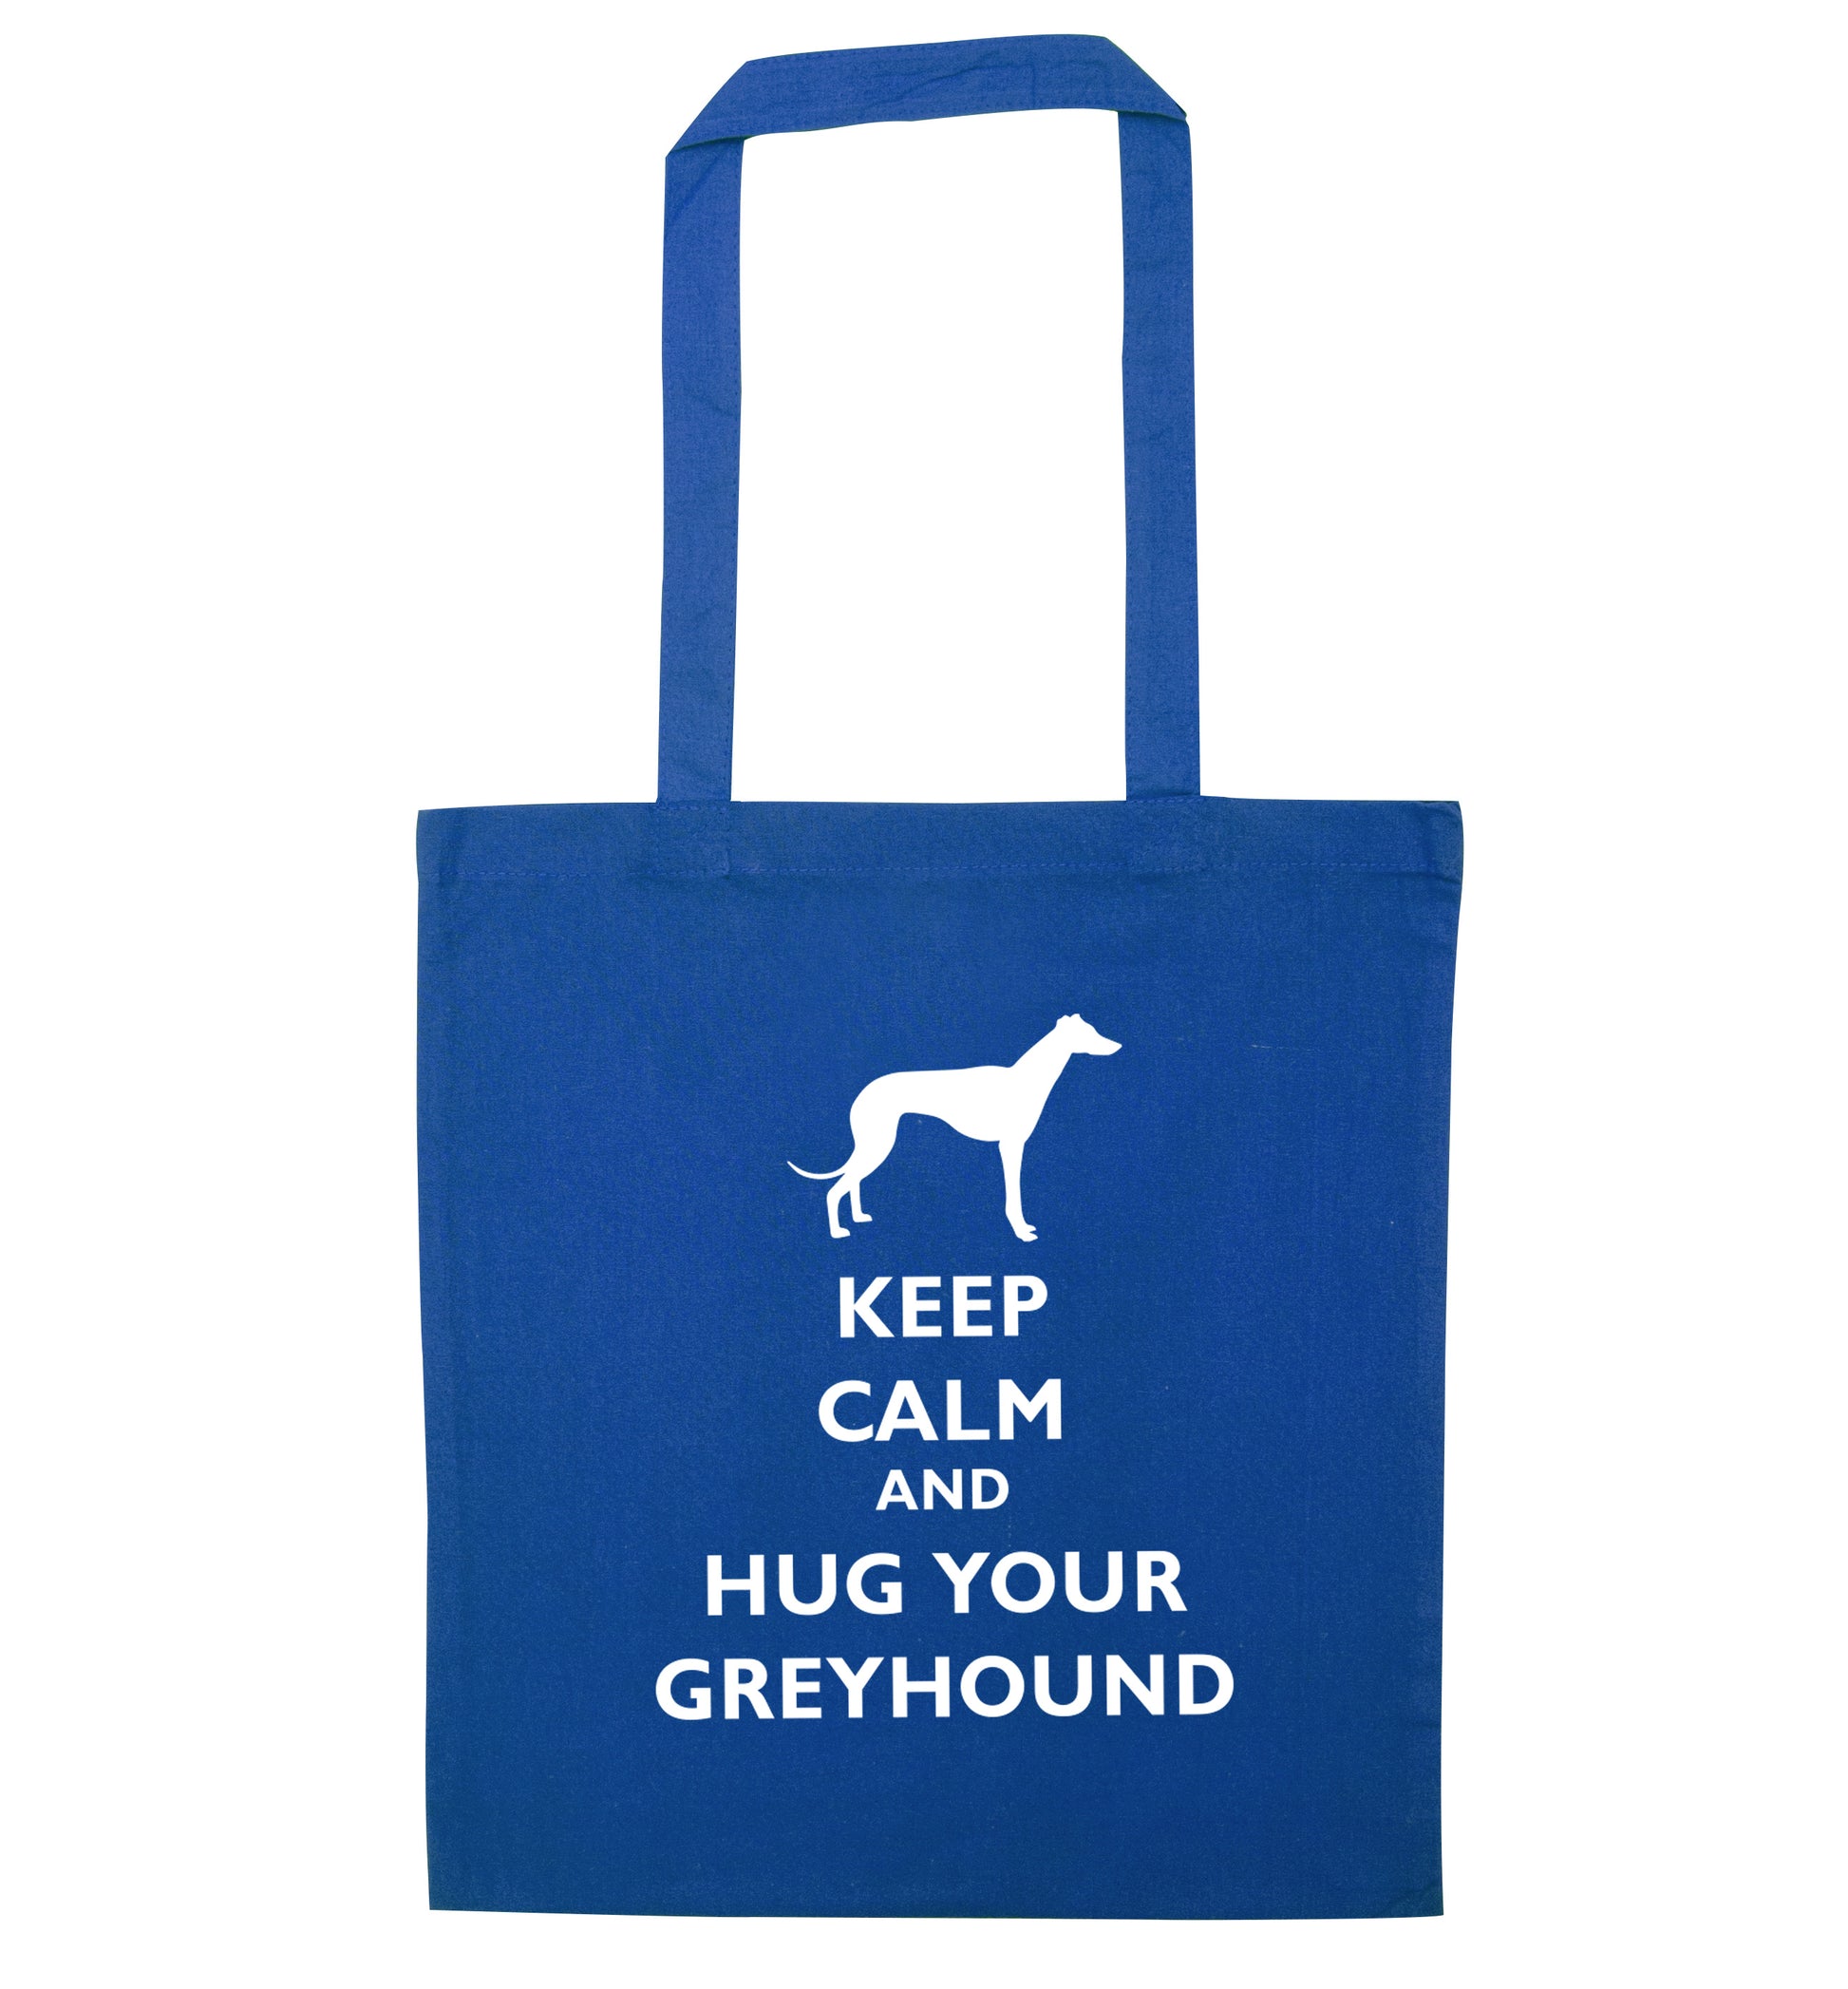 Keep calm and hug your greyhound blue tote bag